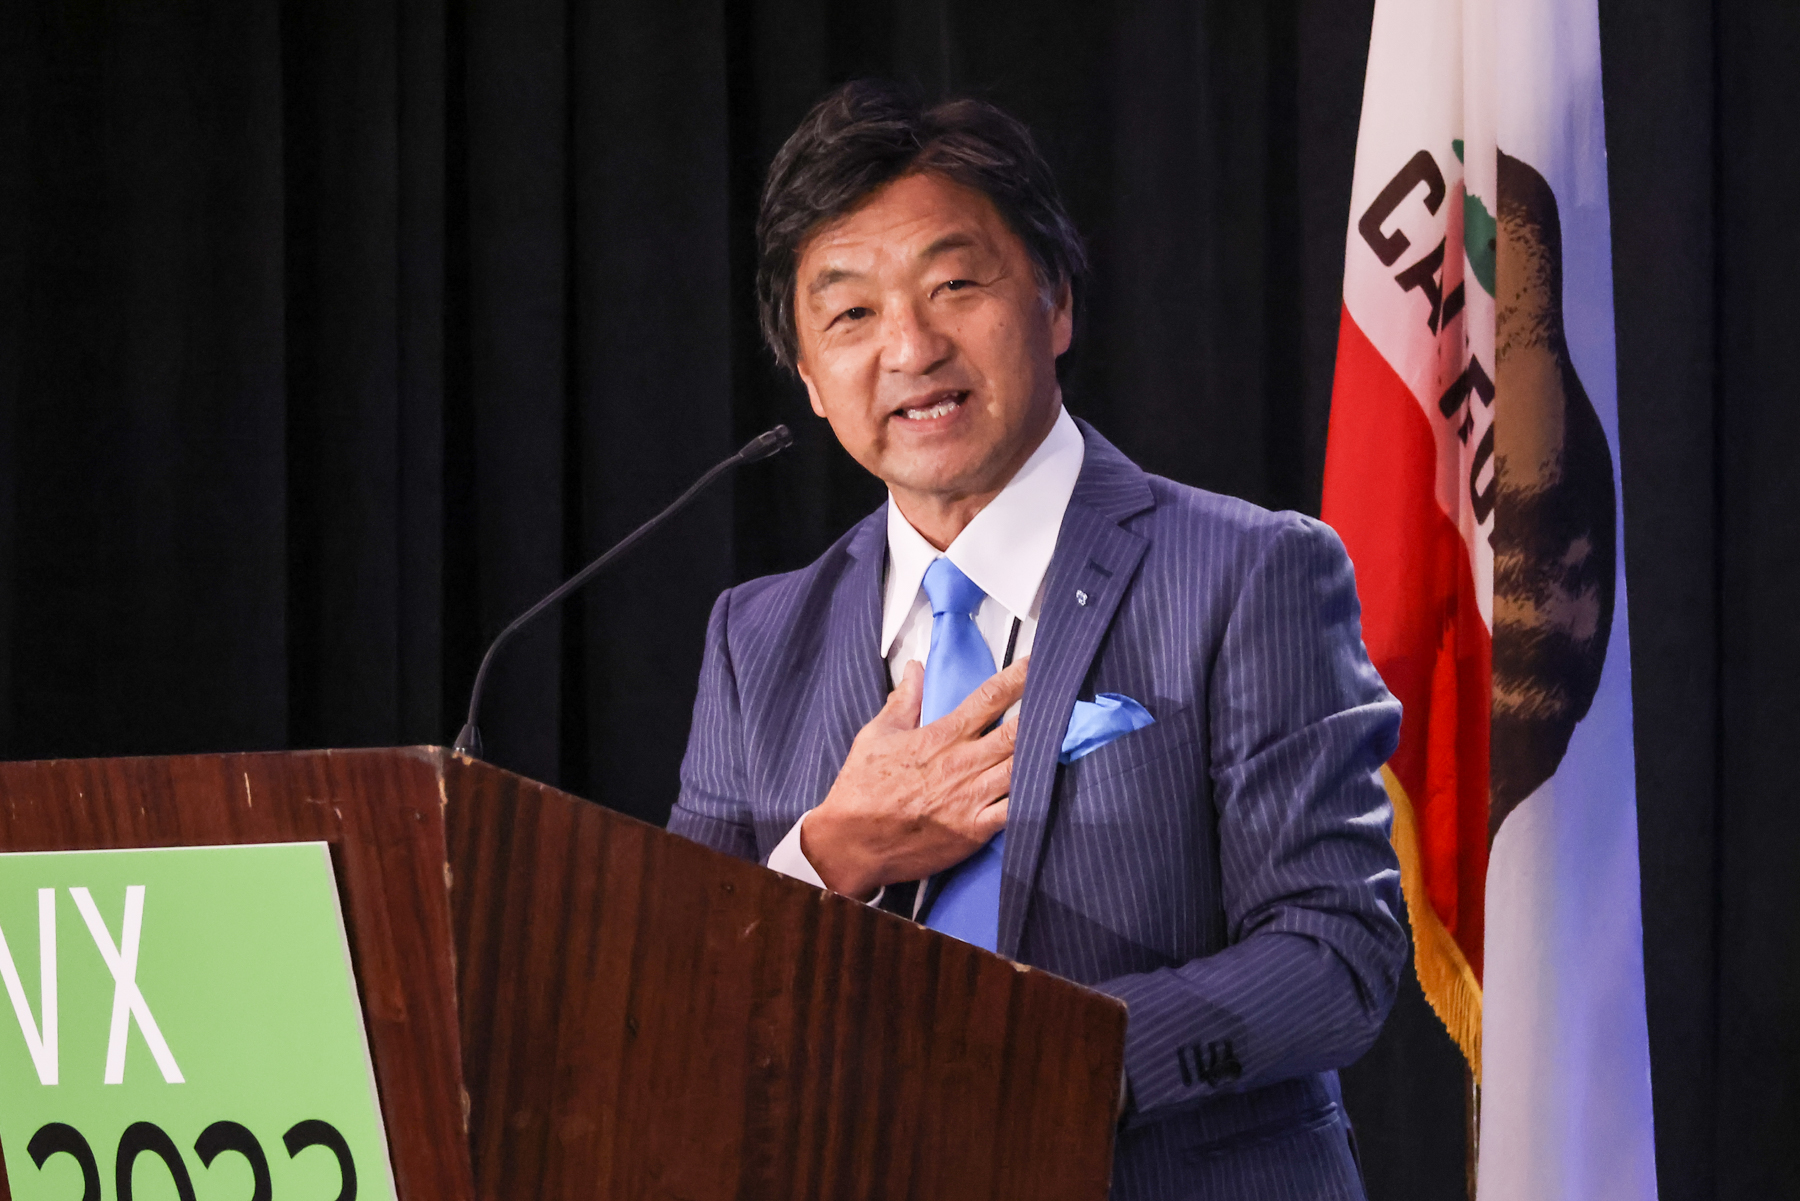 Hiroshi Tomita speaking at the podium